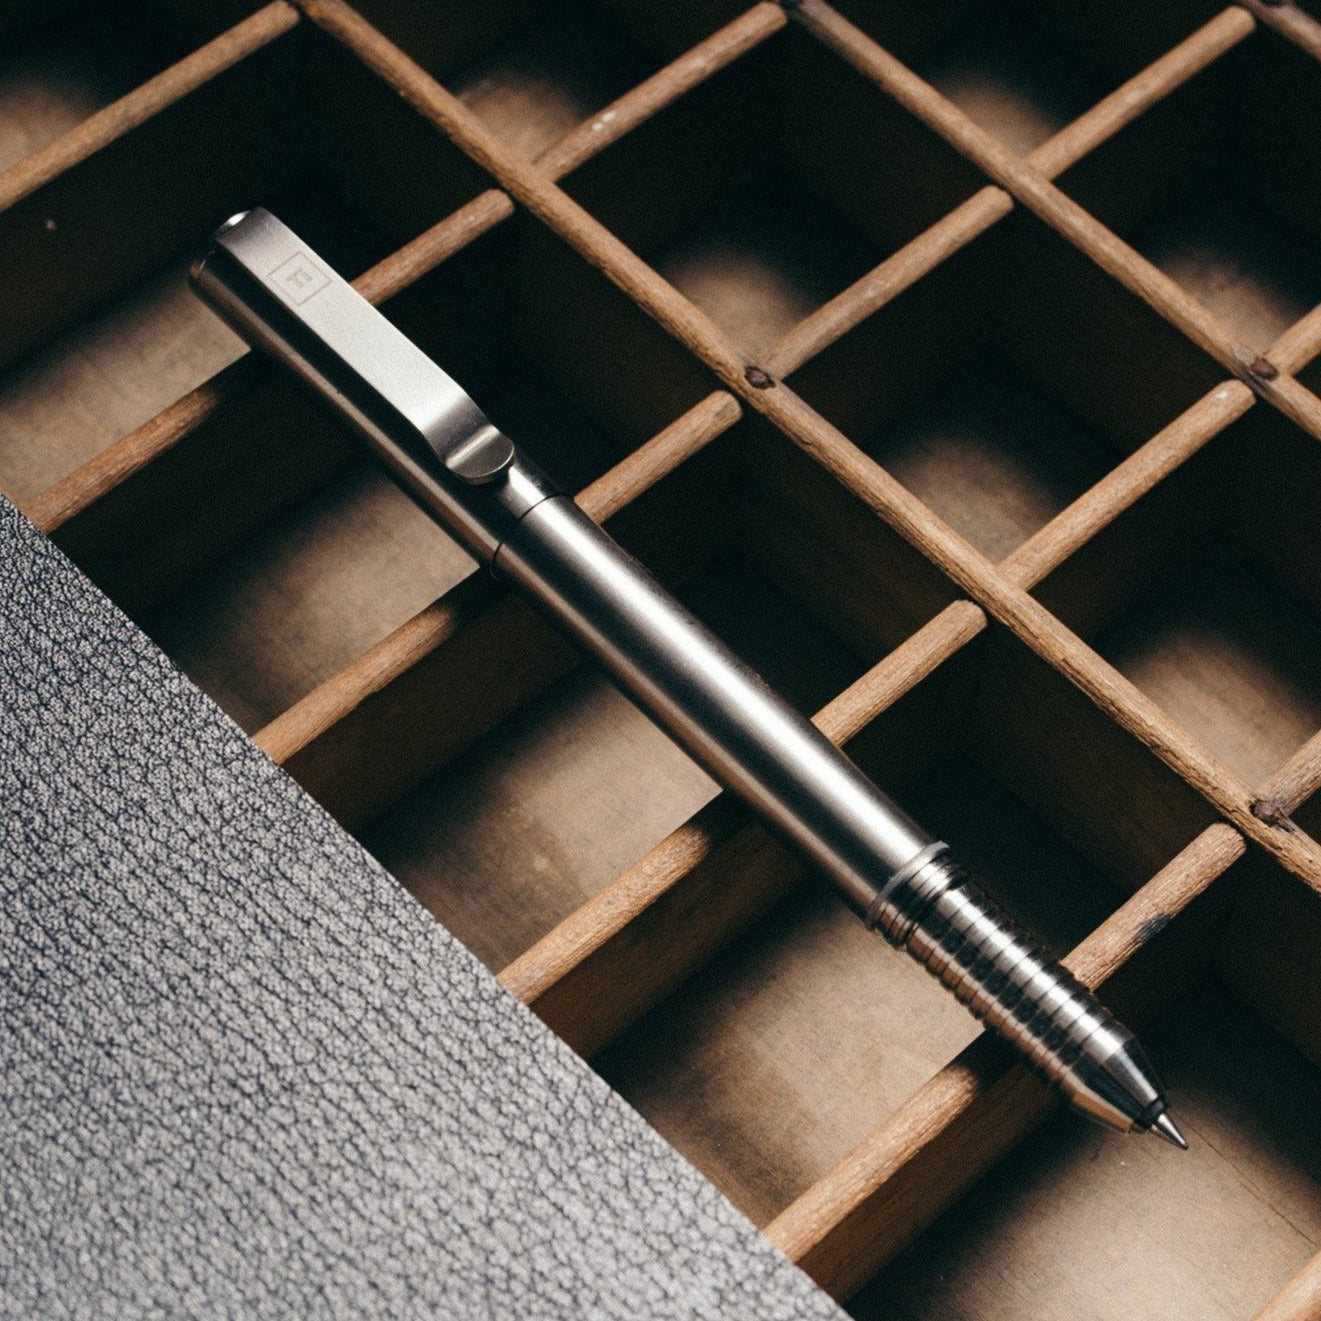 Ti Arto : The Ultimate Refill Friendly Pen - Big Idea Design LLC - INTL